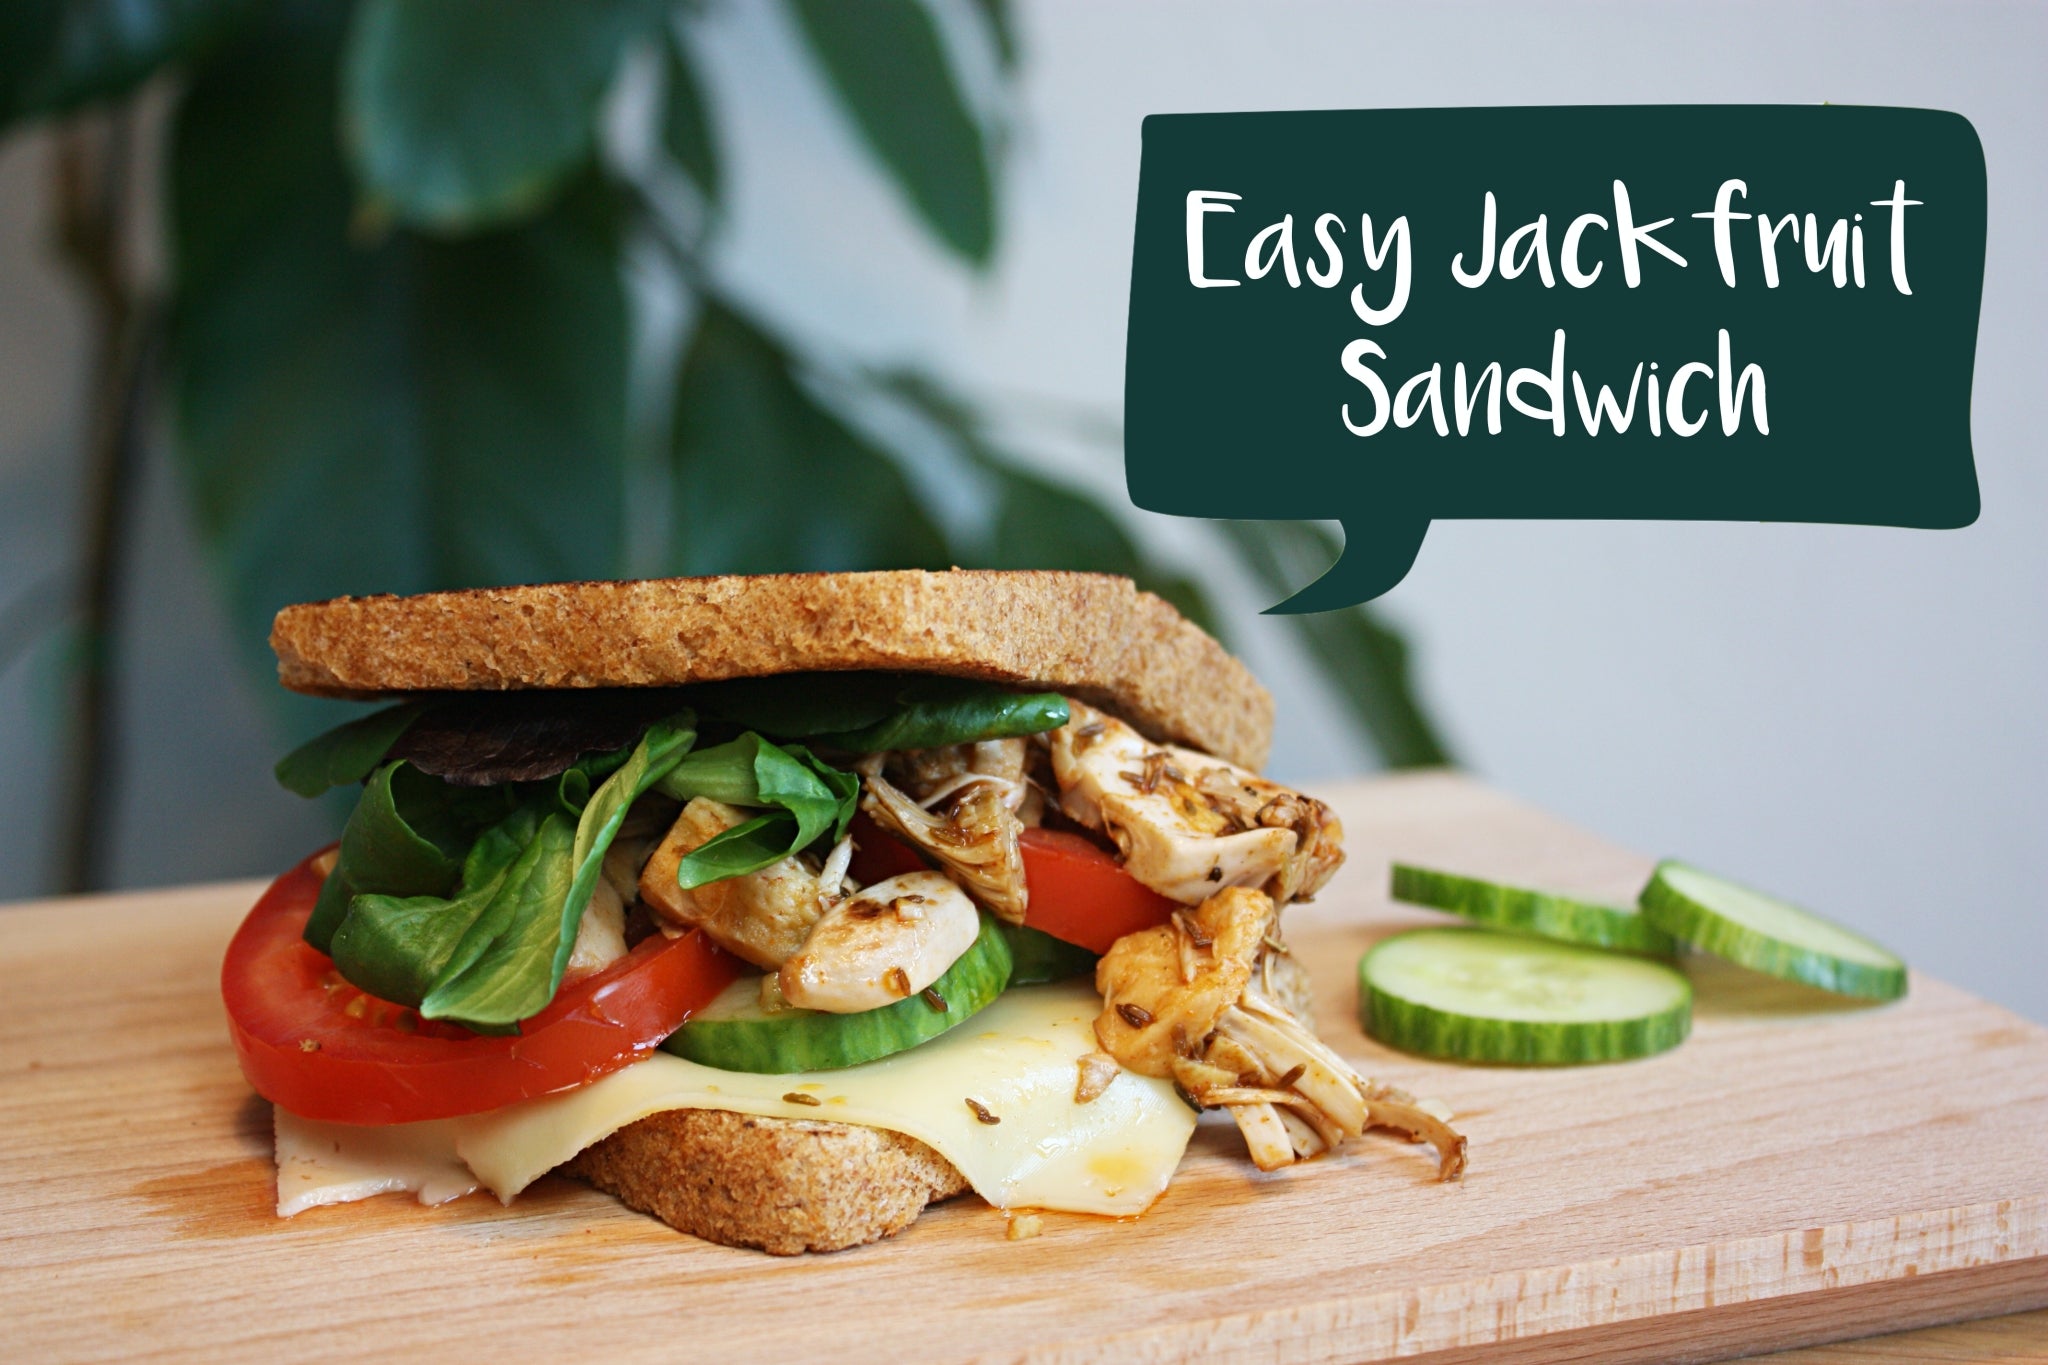 Easy Jackfruit Sandwich with JACKY F.